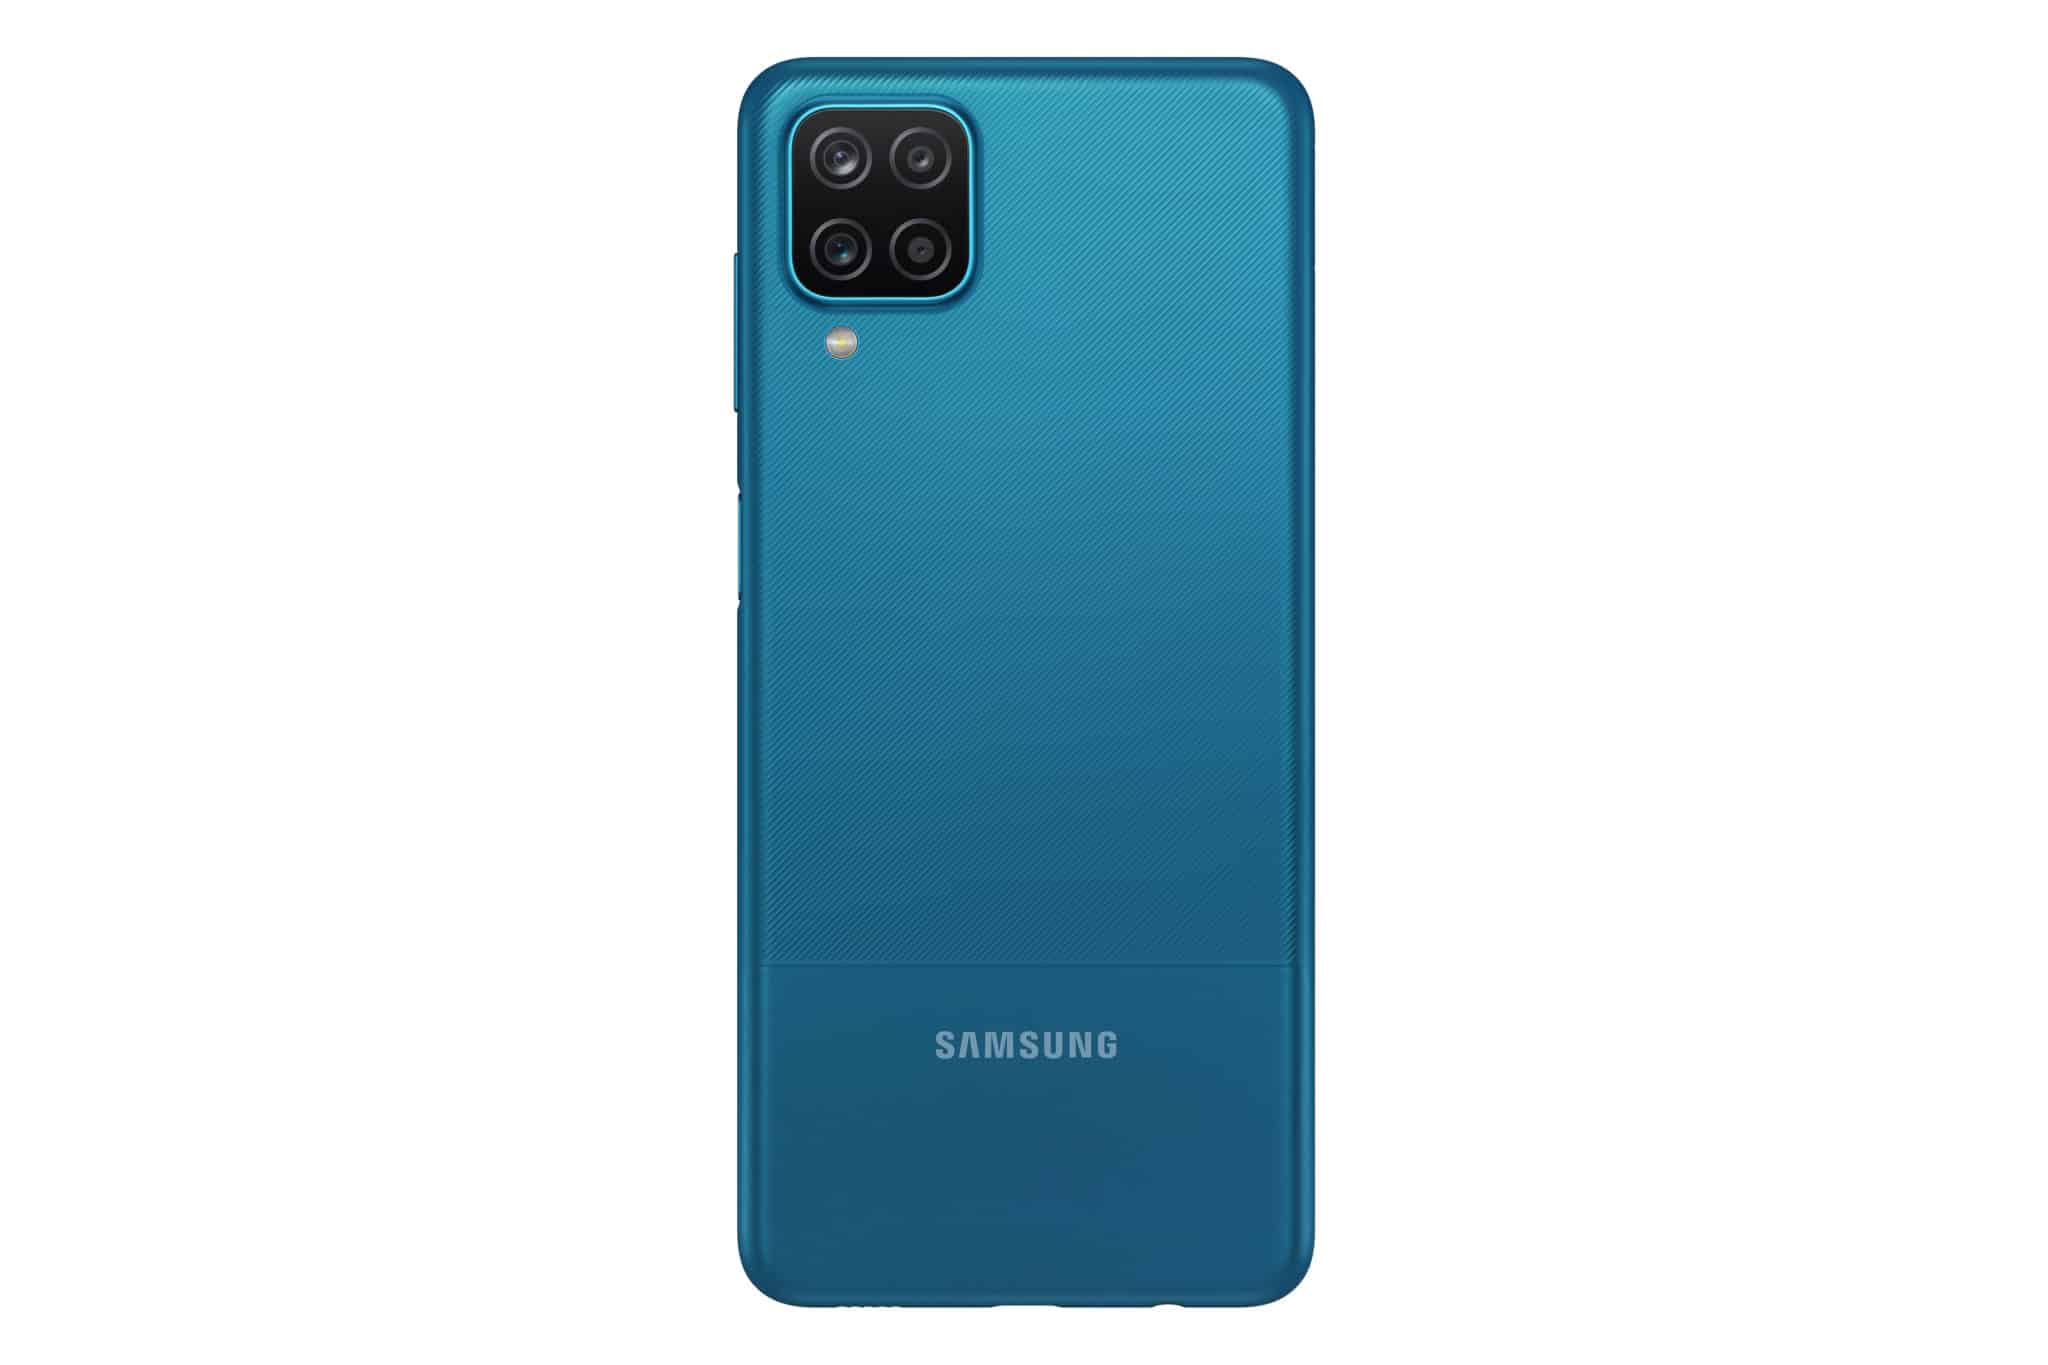 Samsung Galaxy A12 - Blue color